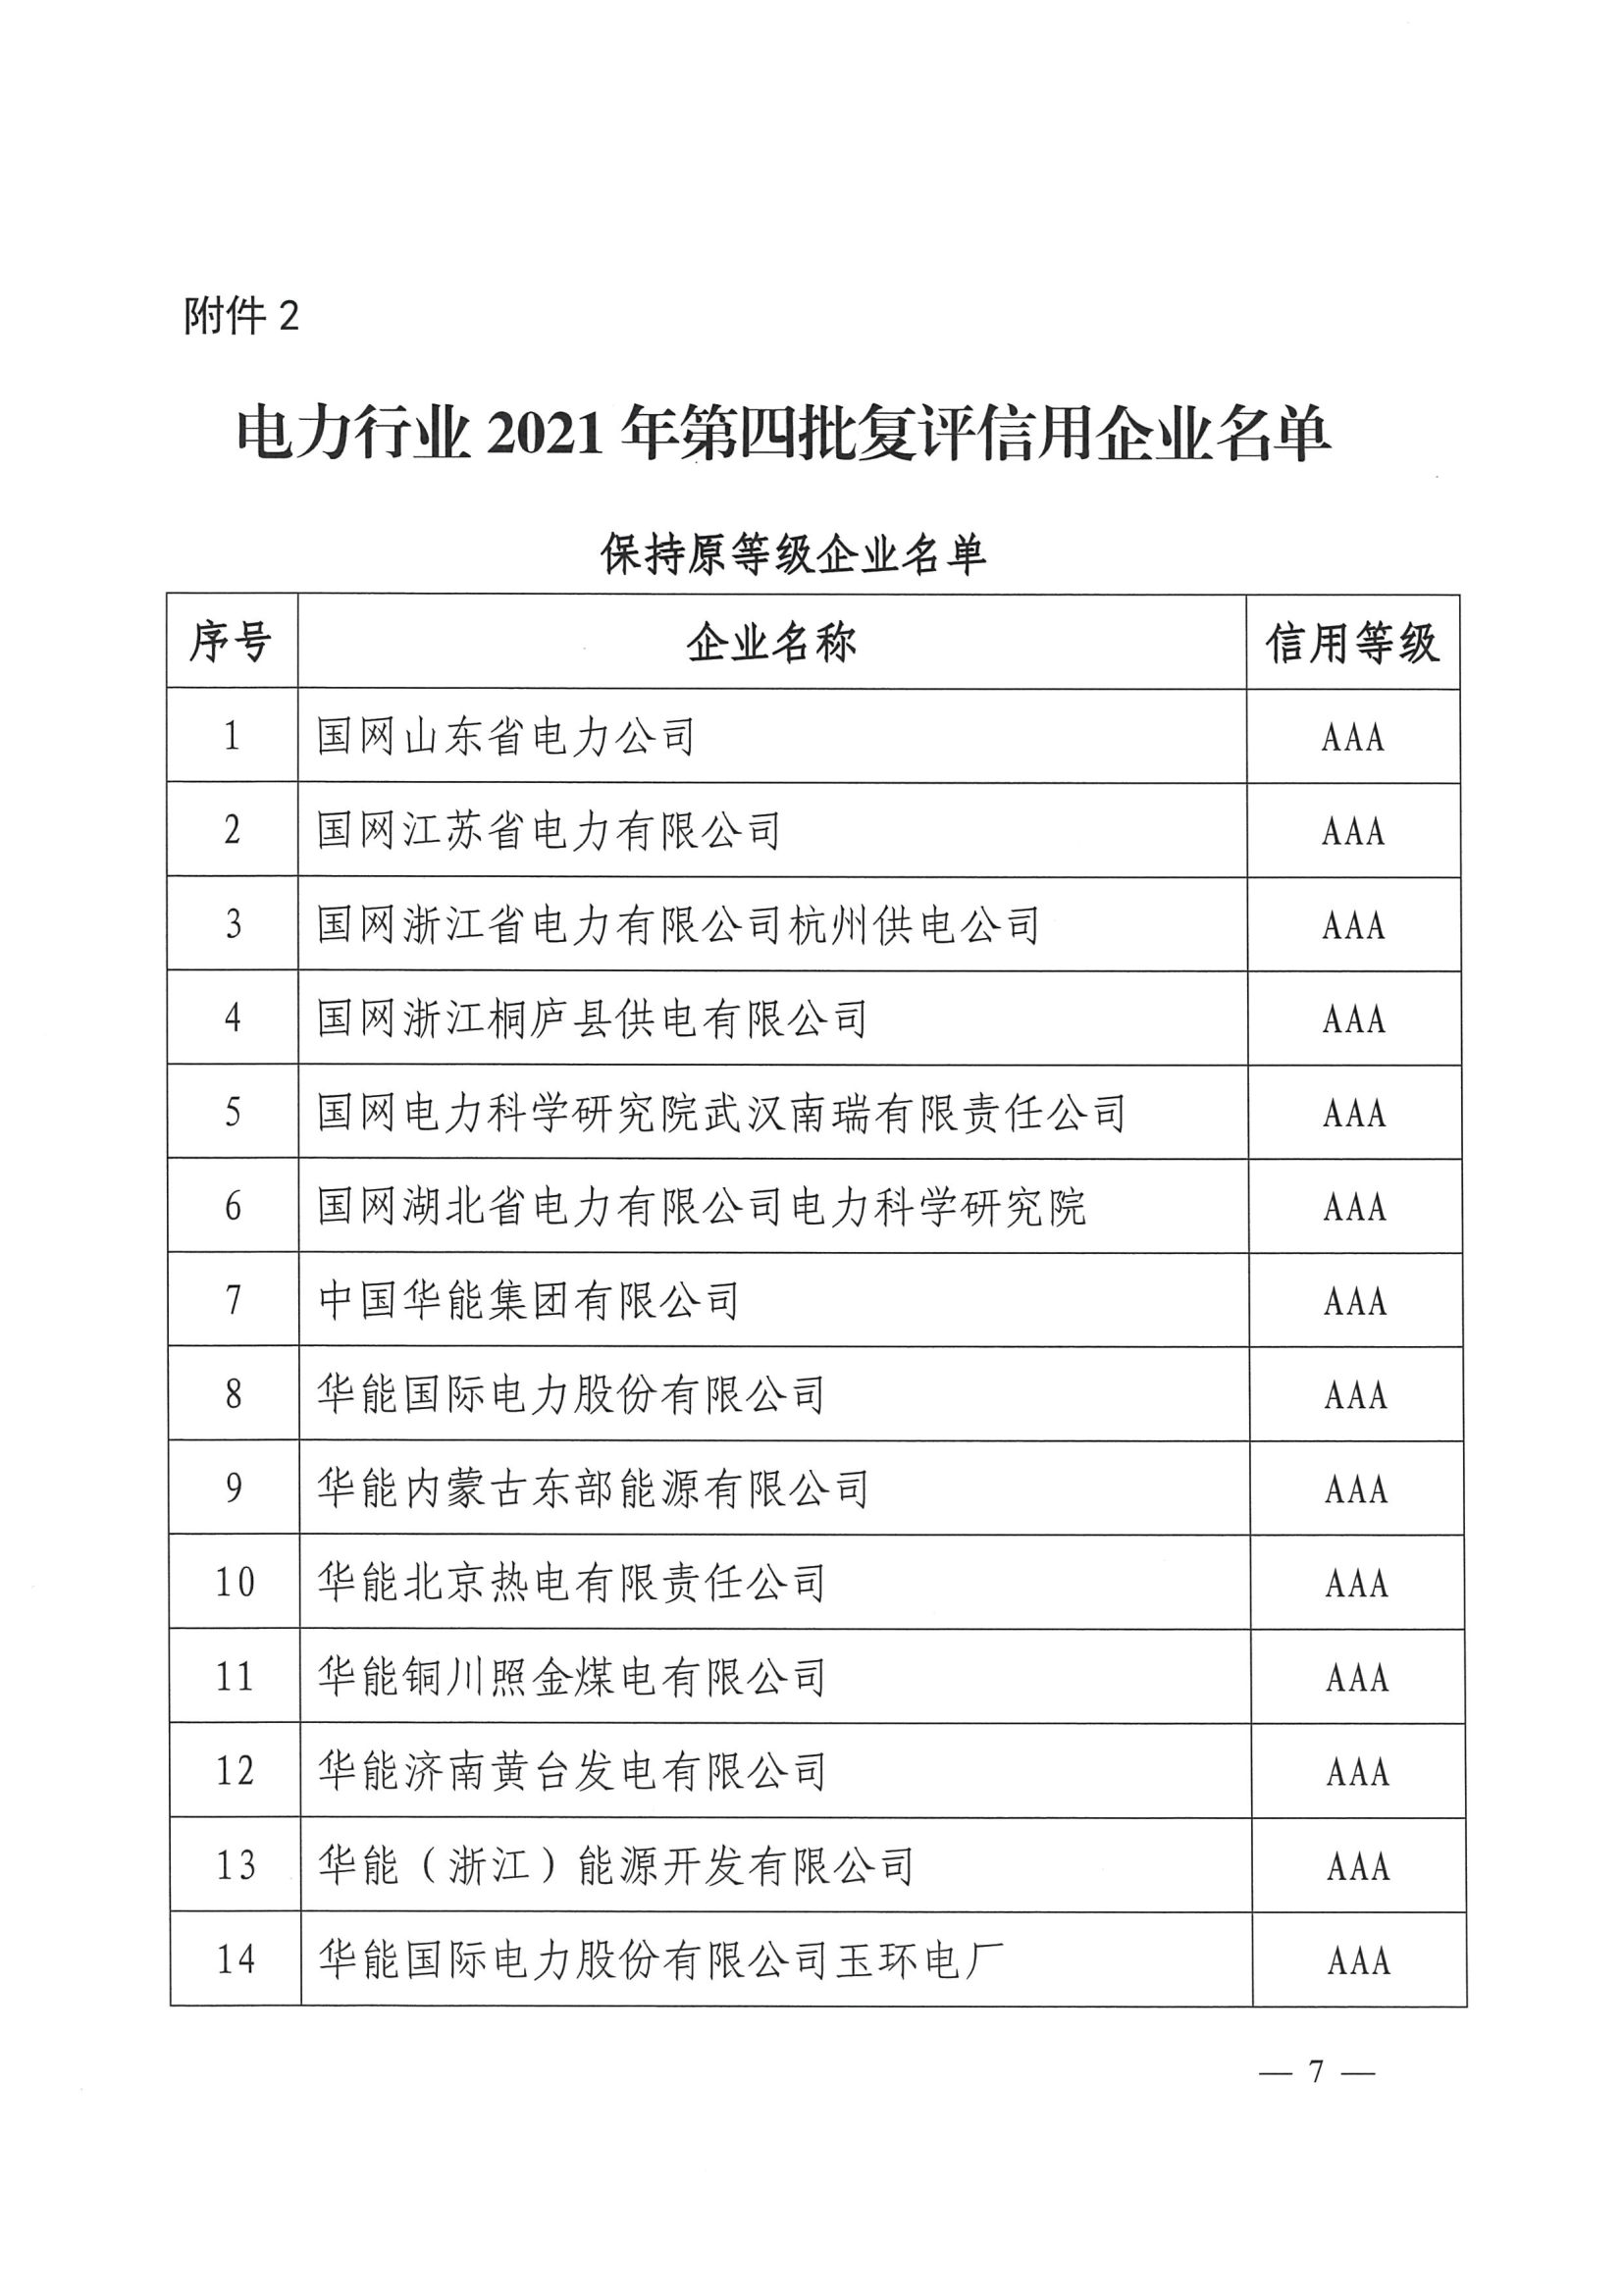 中电联关于公布电力行业2021年第四批初评及复评企业信用评价结果的通知_7.png